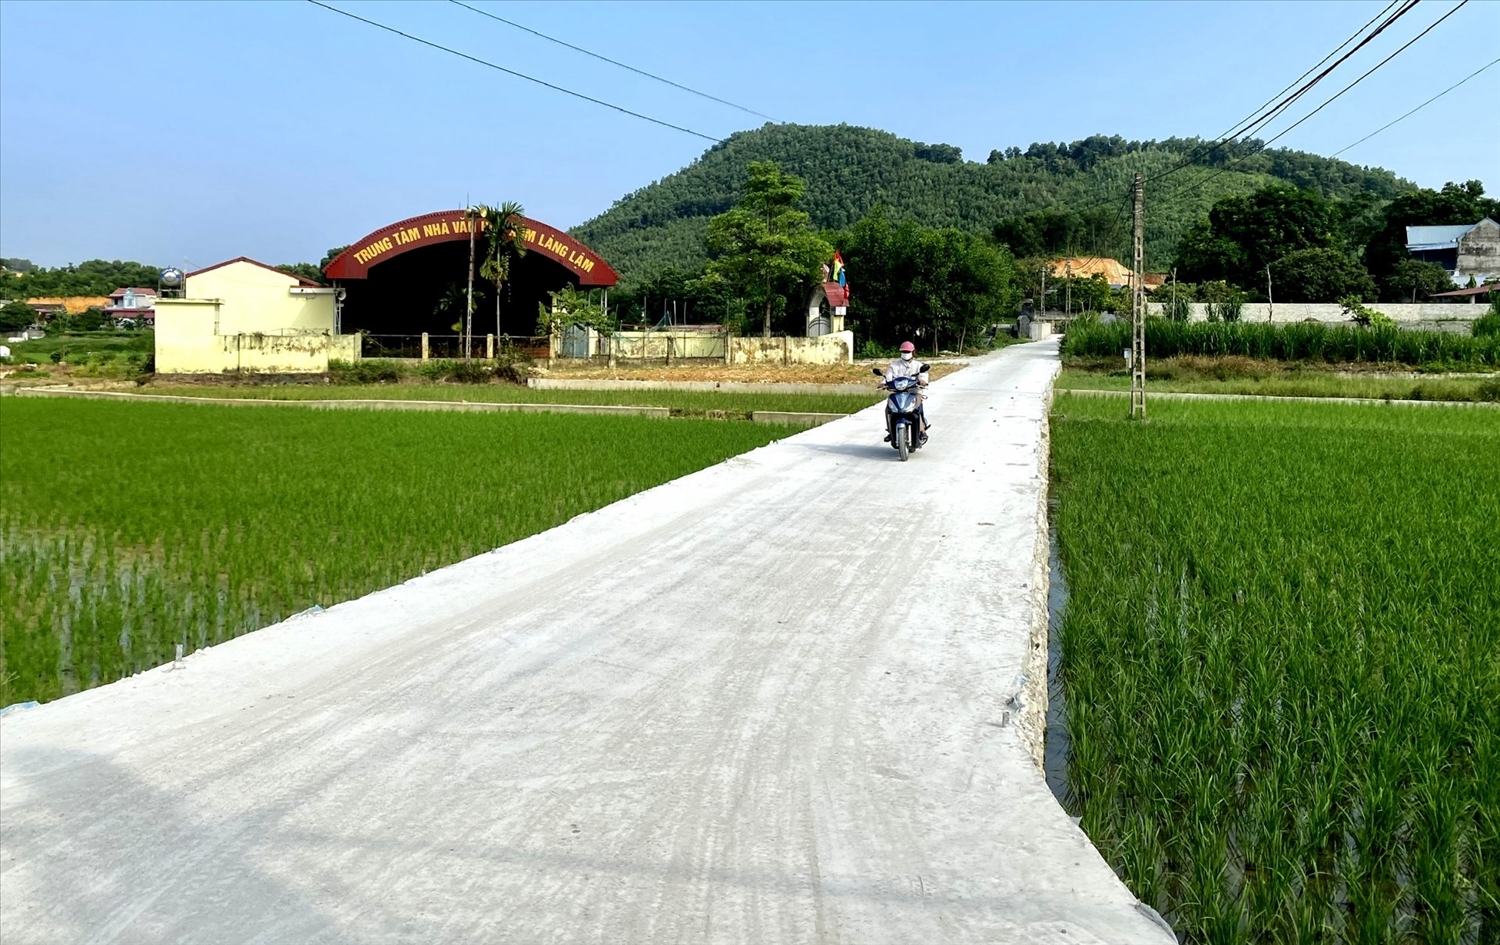 Bằng các nguồn lực chính sách dân tộc, kết cấu hạ tầng nông thôn miền núi huyện Đồng Hỷ ngày càng kiện toàn, tạo điều kiện thuận lợi cho người dân sinh hoạt, sản xuất.